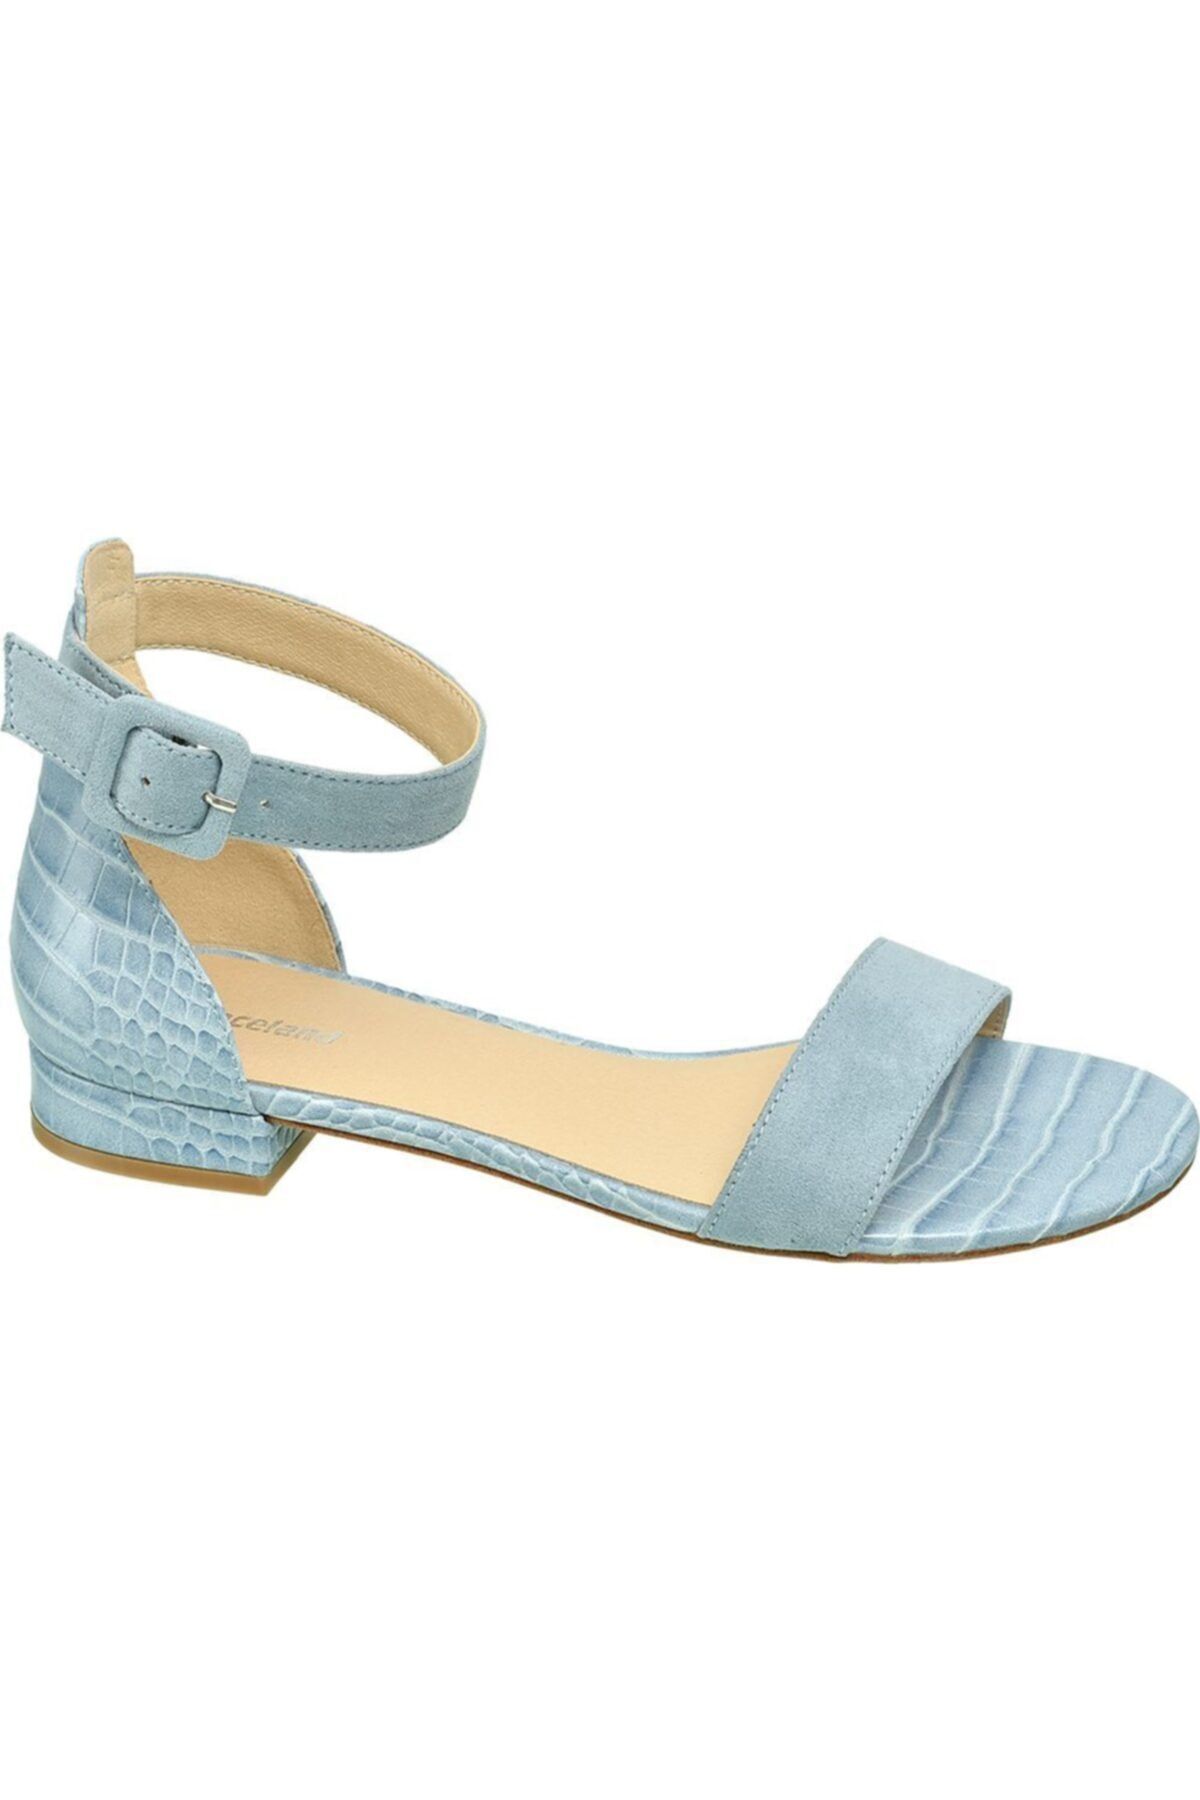 Graceland Deichmann Kadın Mavi Sandalet